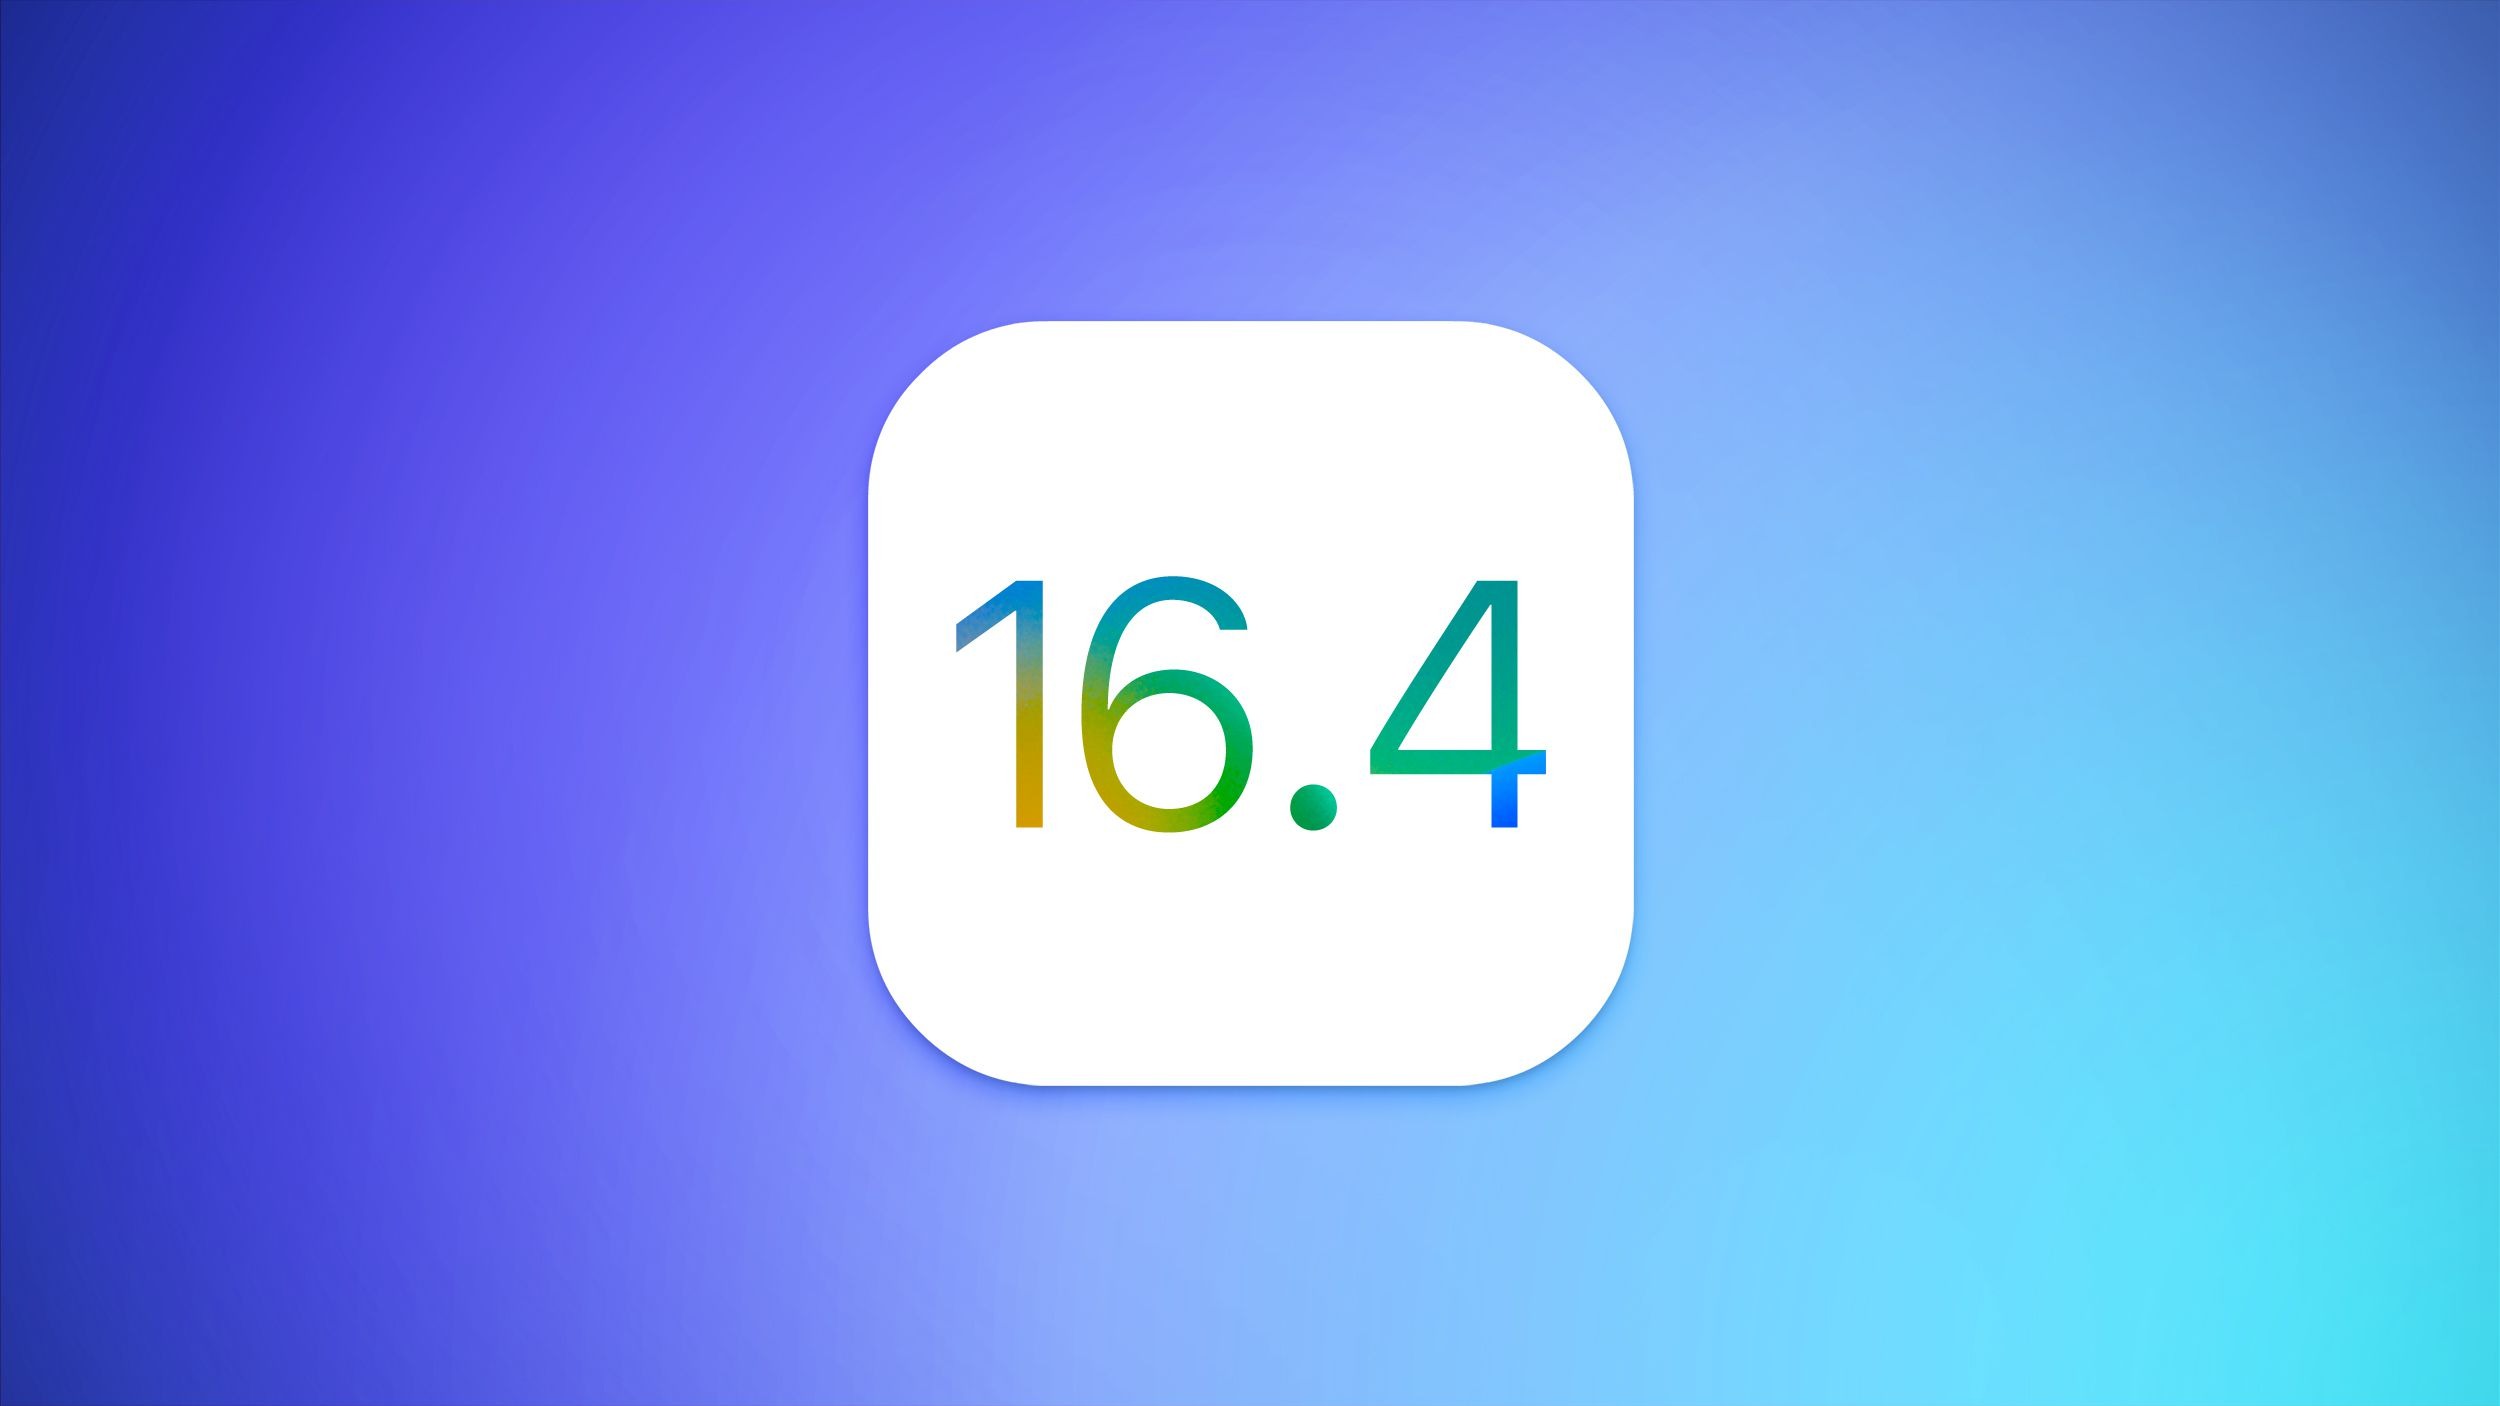 La actualización de iOS 16.4 permite el uso de la herramienta de selección de objetos en imágenes, recortarlas y compartirlas como stickers en WhatsApp. (Macrumors)